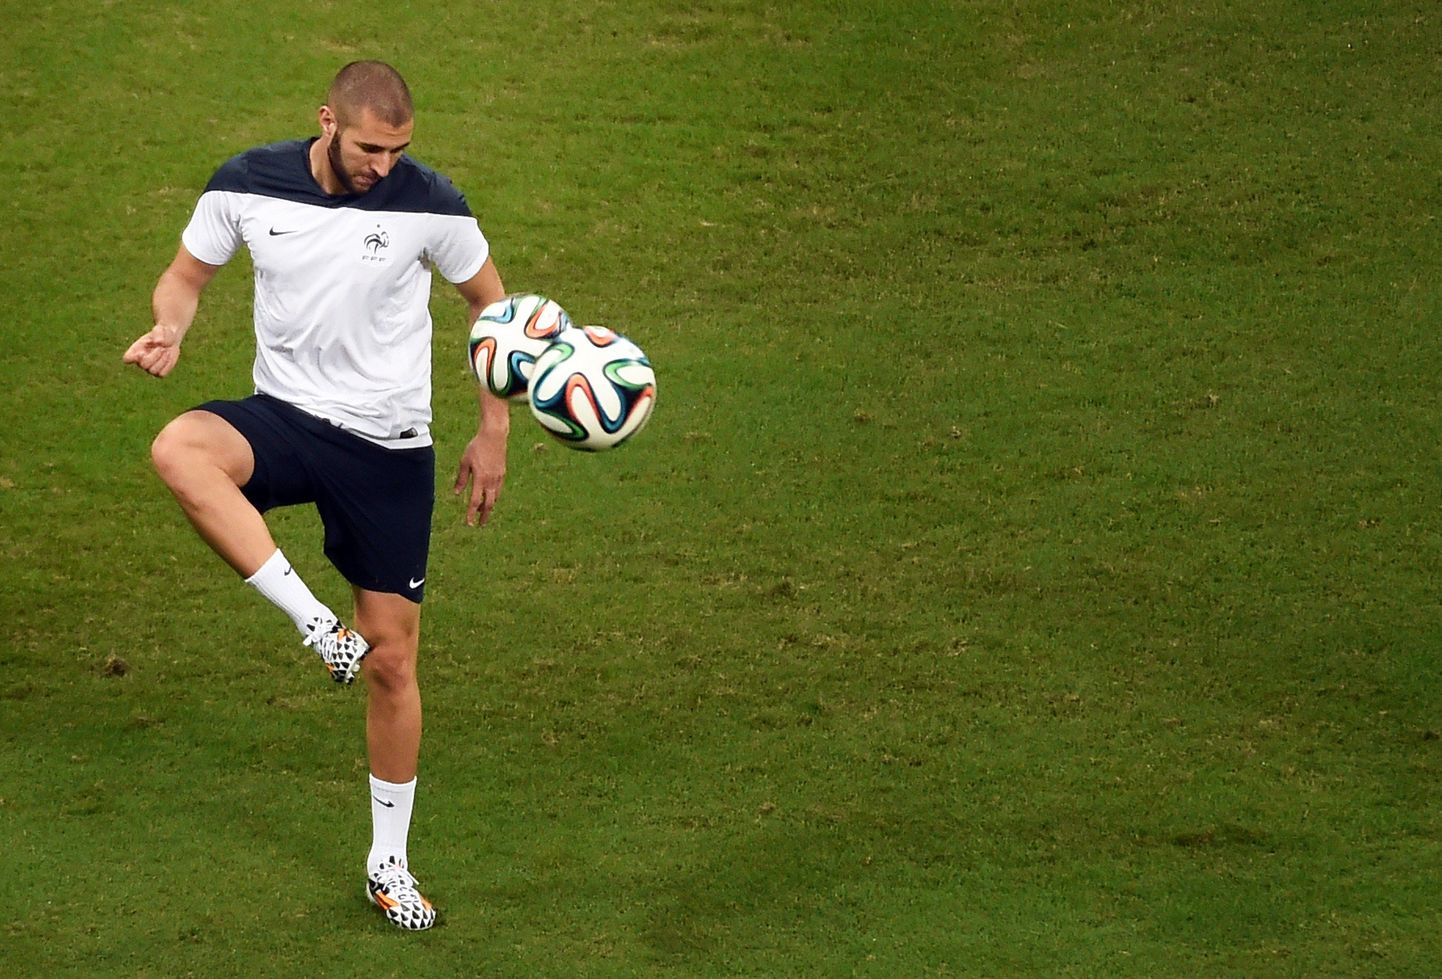 Esimeses mängus hiilanud Karim Benzema loodab turniiri samas vaimus jätkata